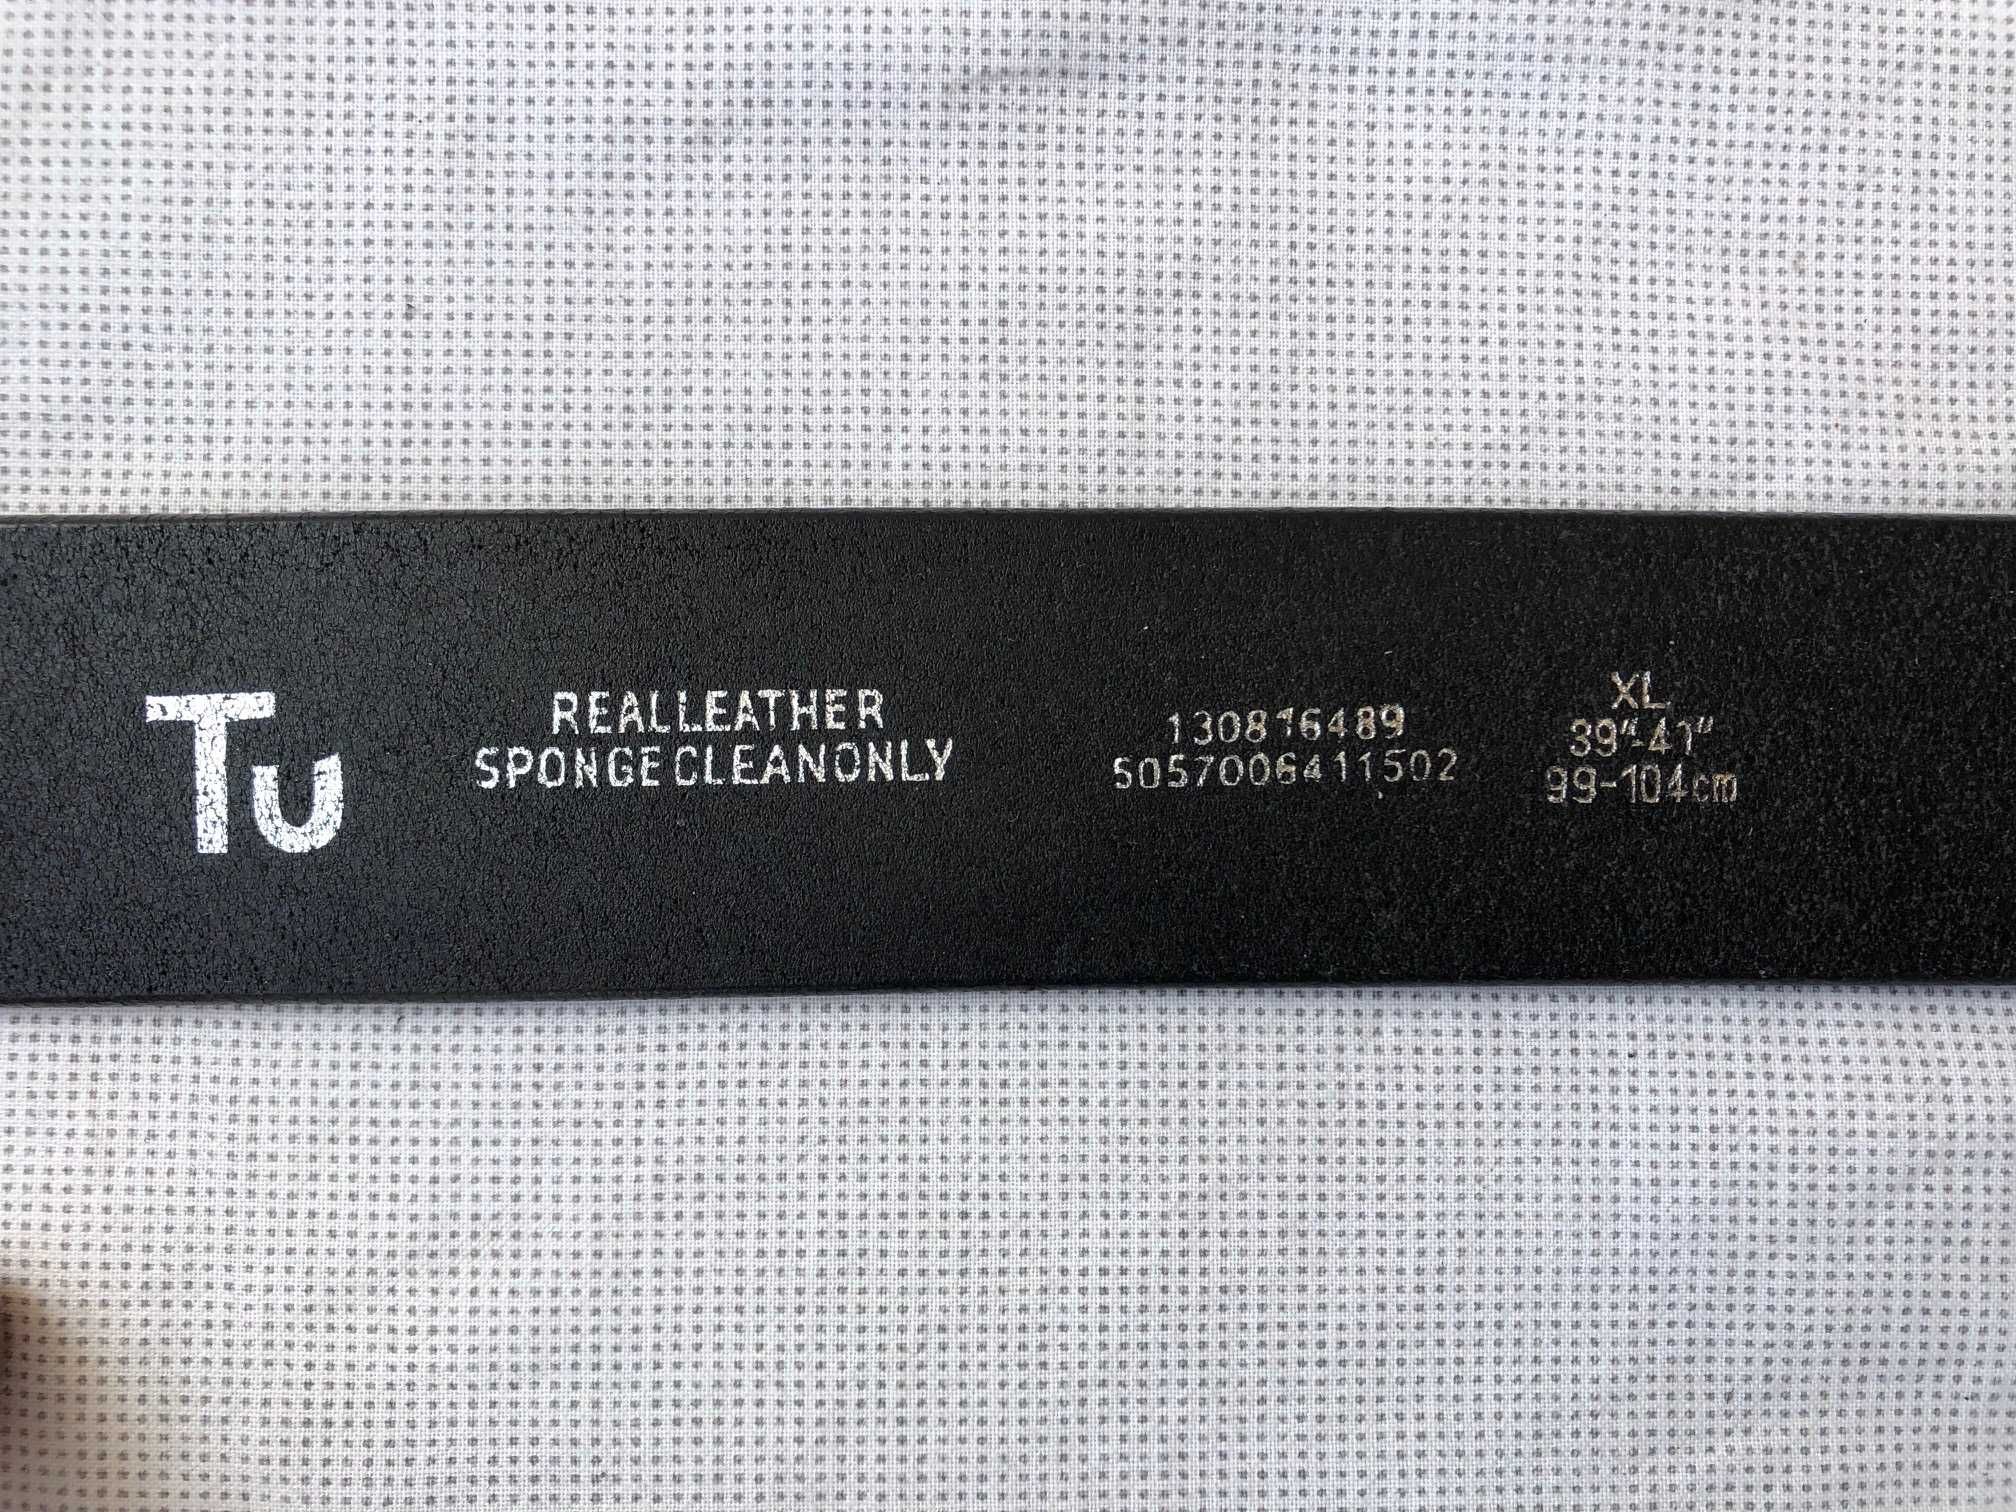 Оригинальный кожаный ремень TU (английский бренд)